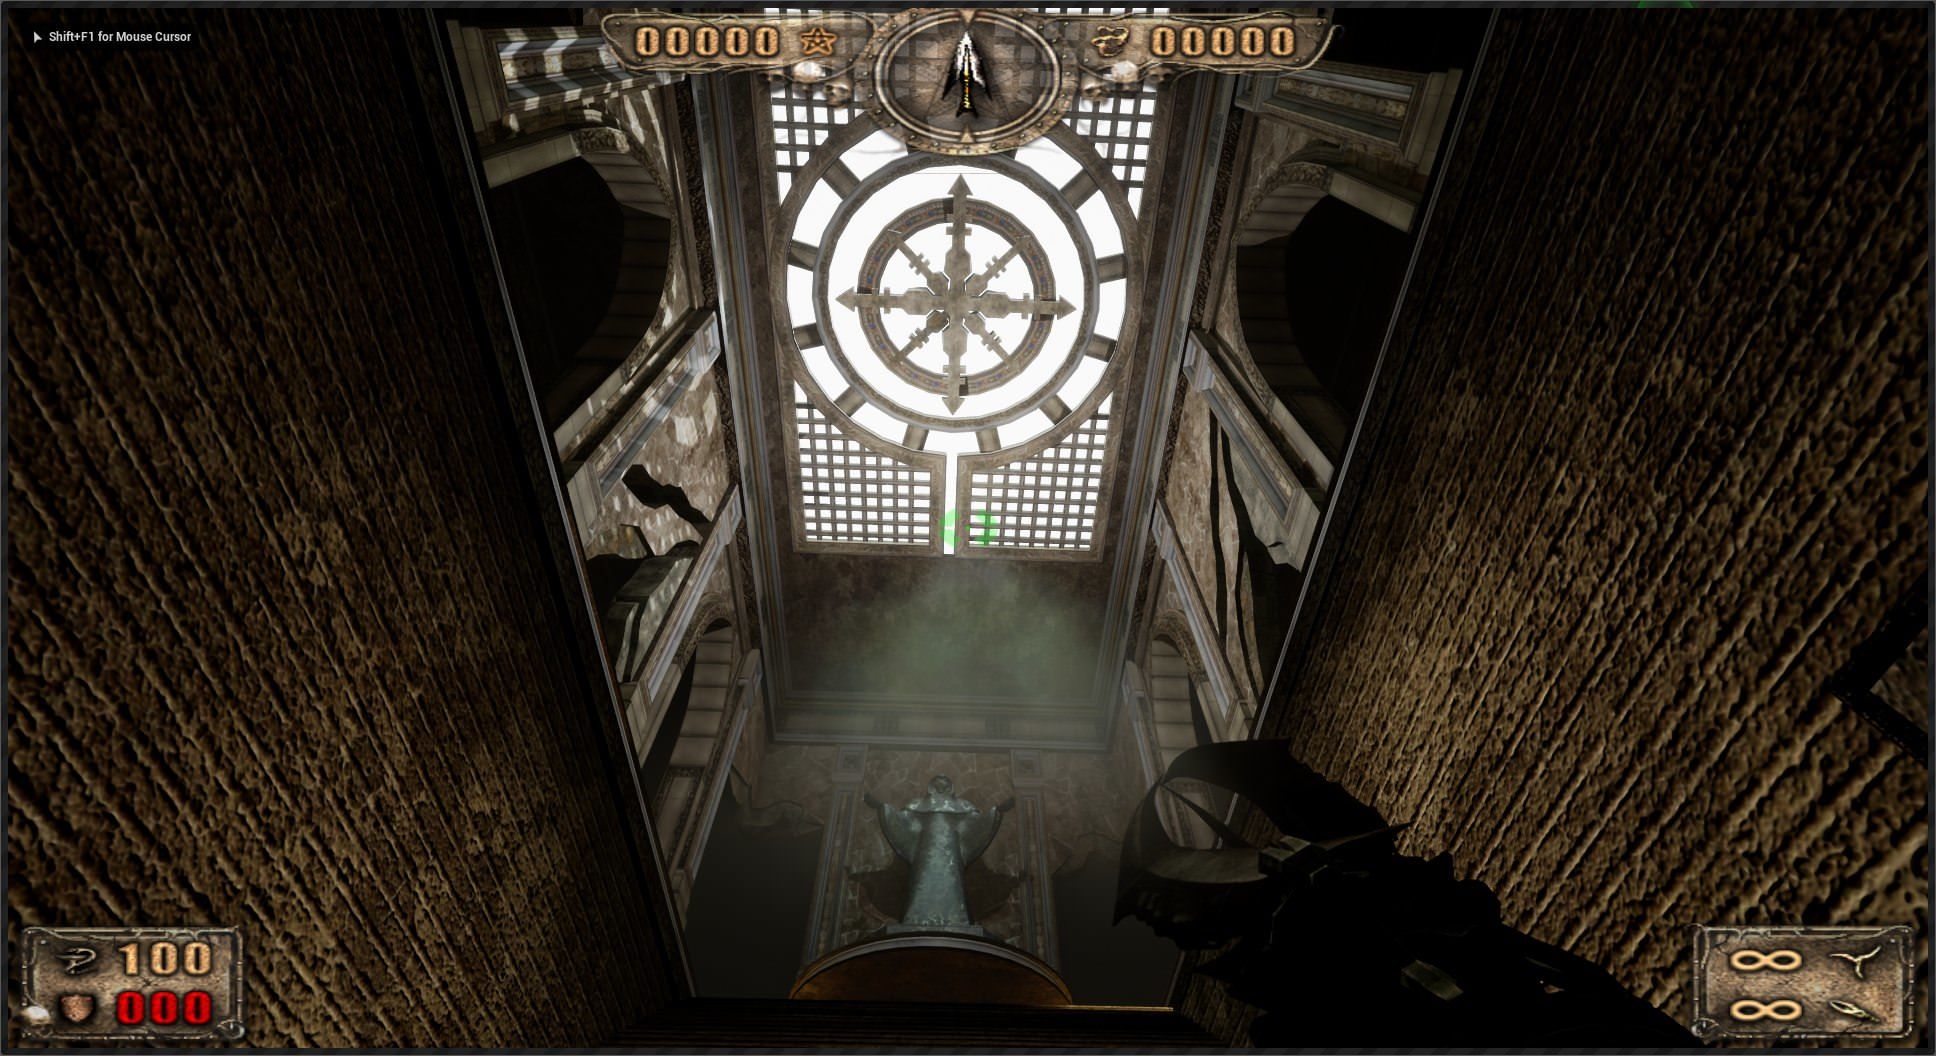 Popüler seri Painkiller'ın ilk oyunu Unreal Engine 4'e taşındı